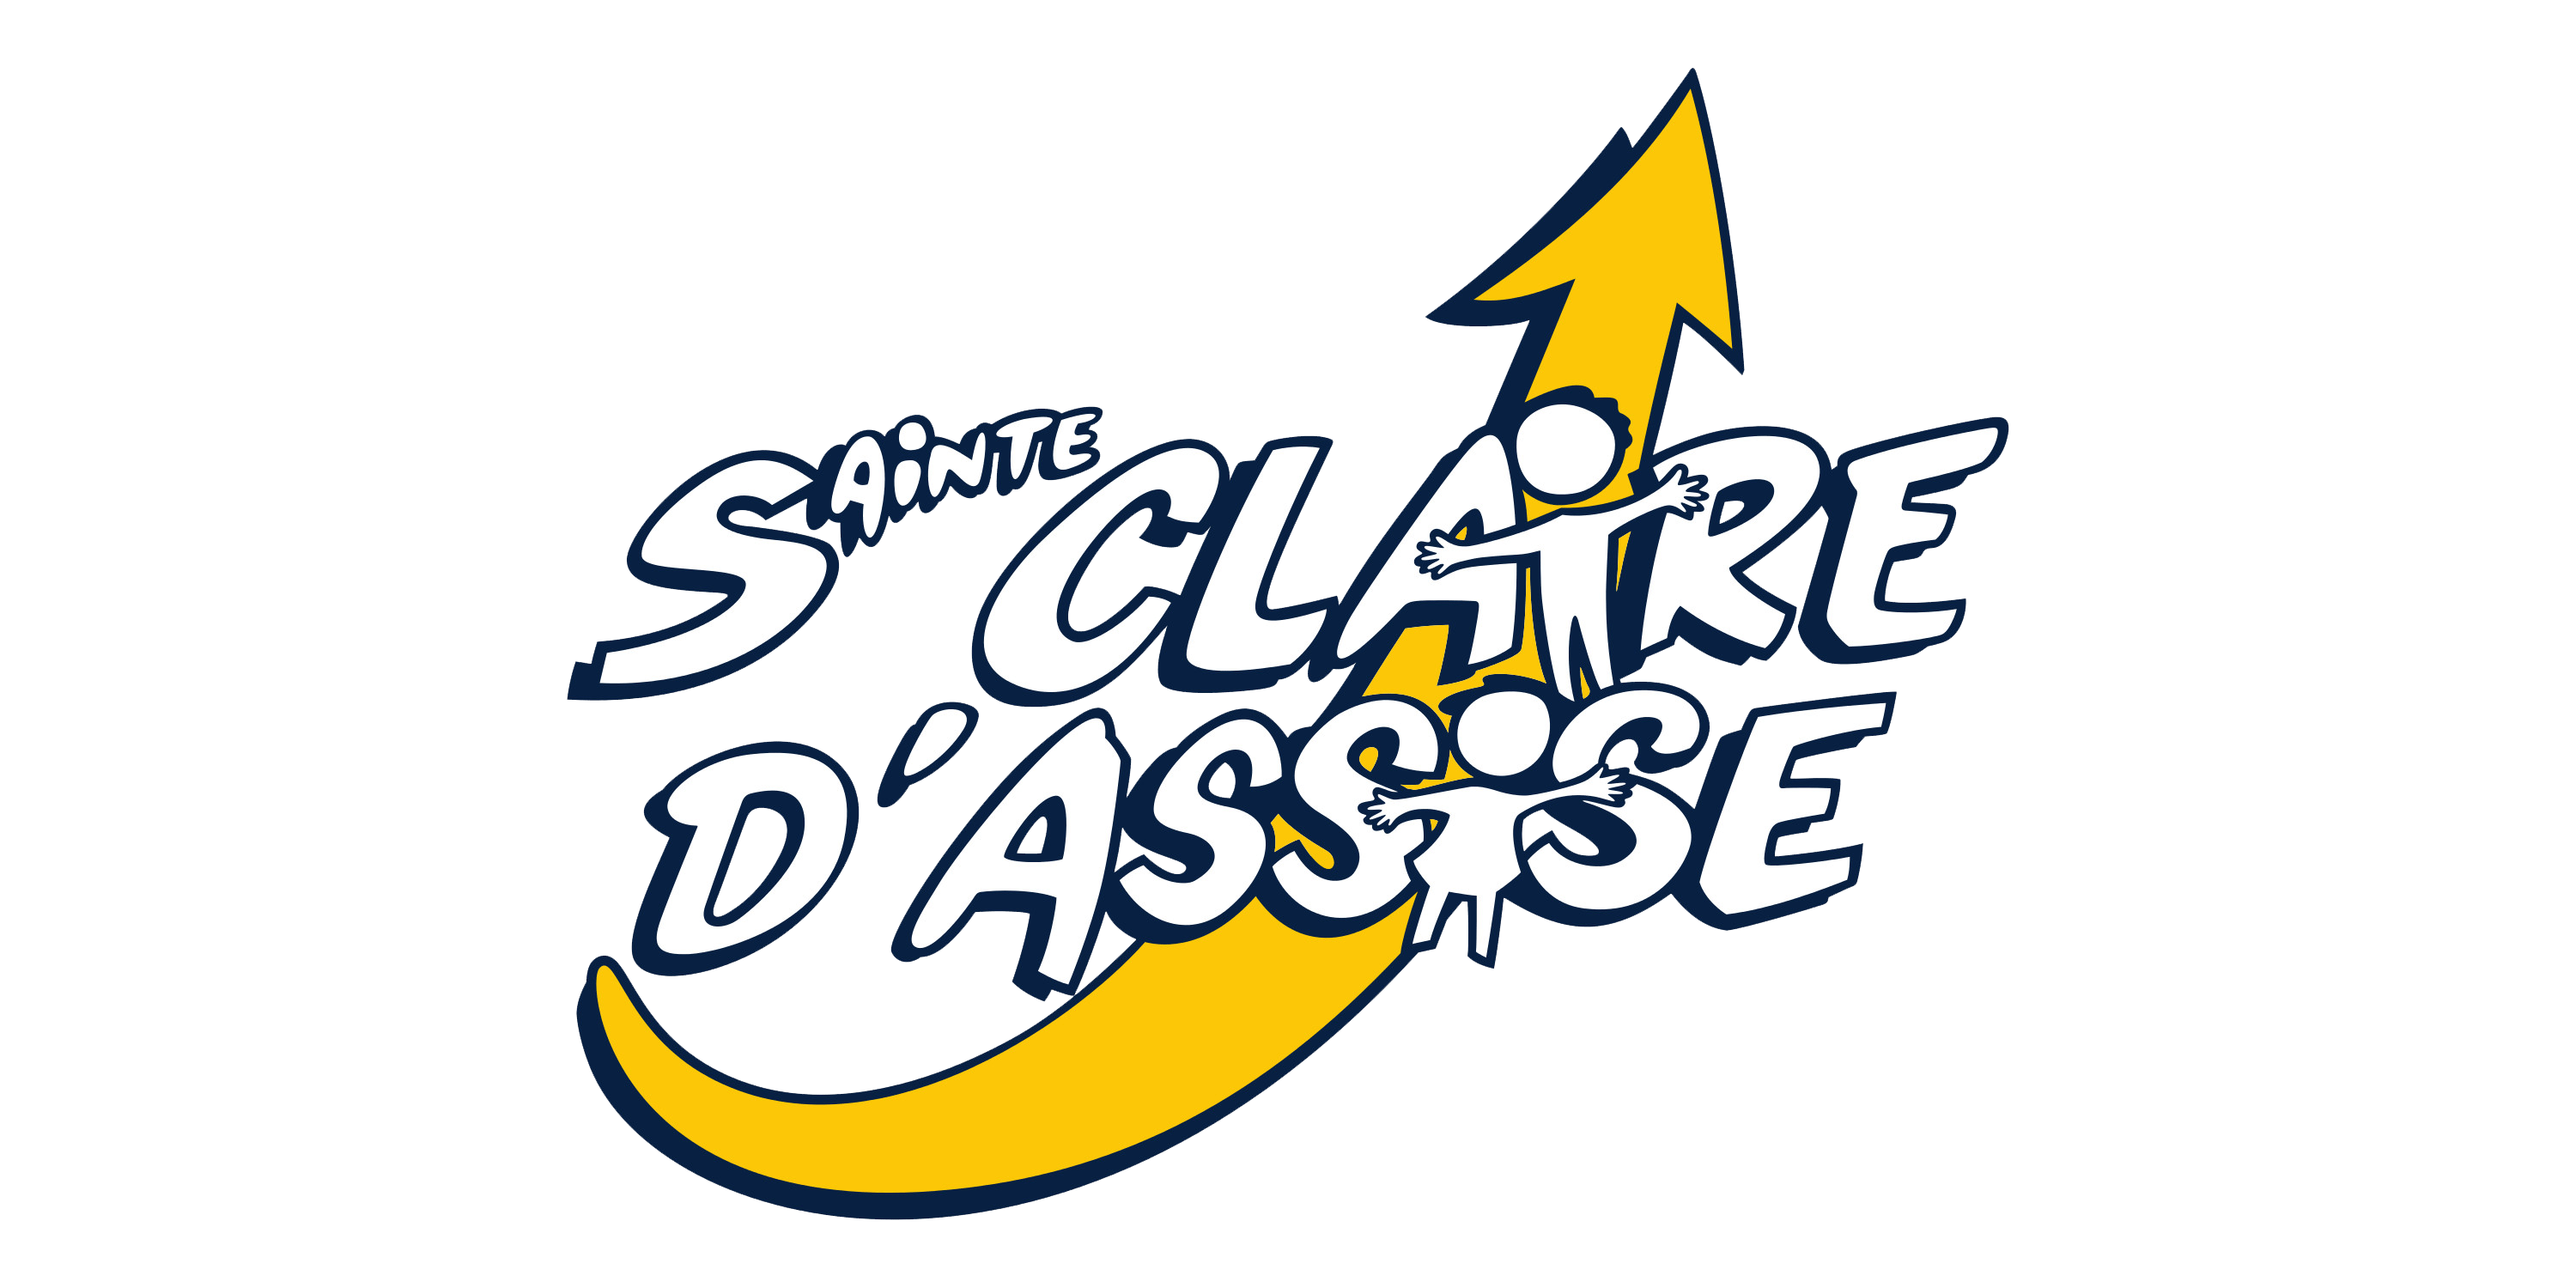 École Sainte Claire d'Assise